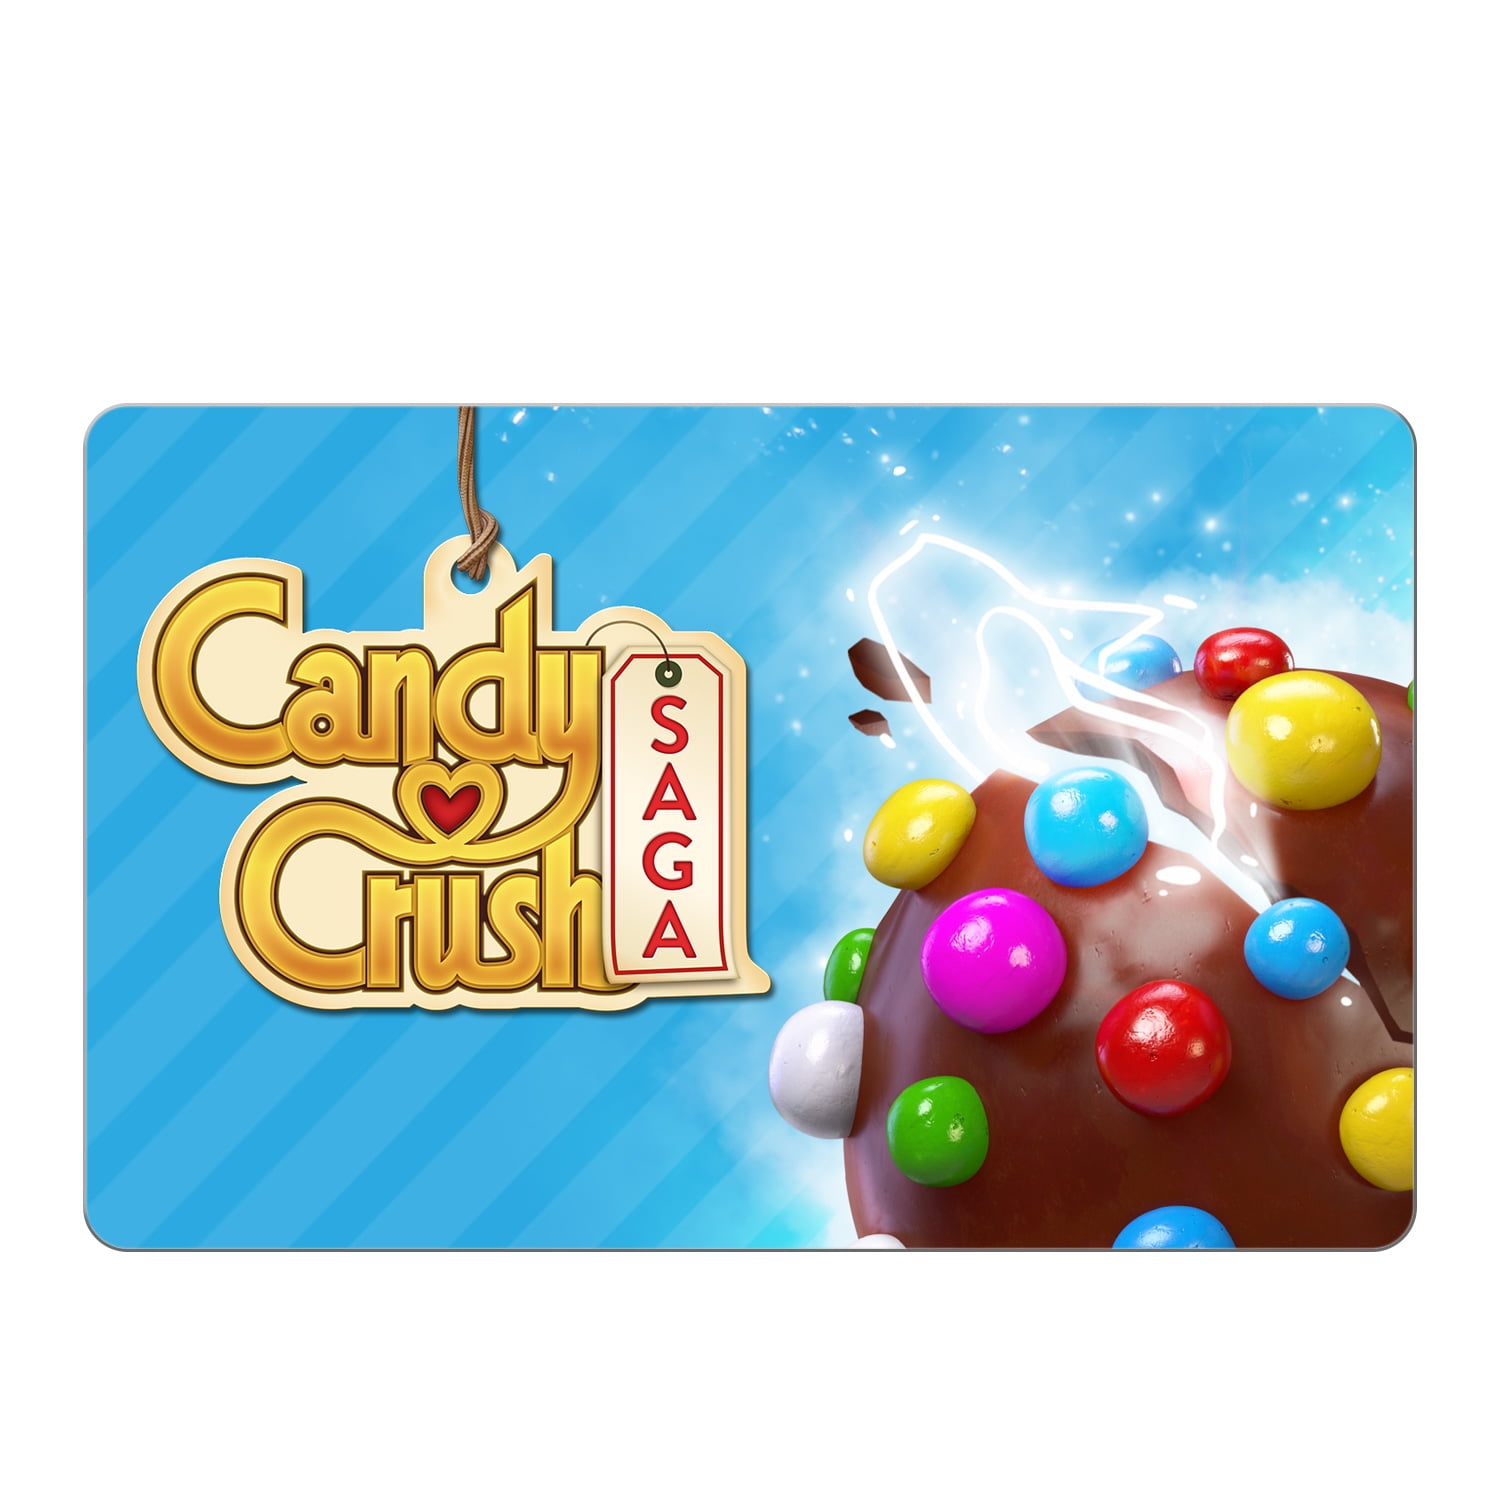 Unblocked Games Premium - Candy Crush